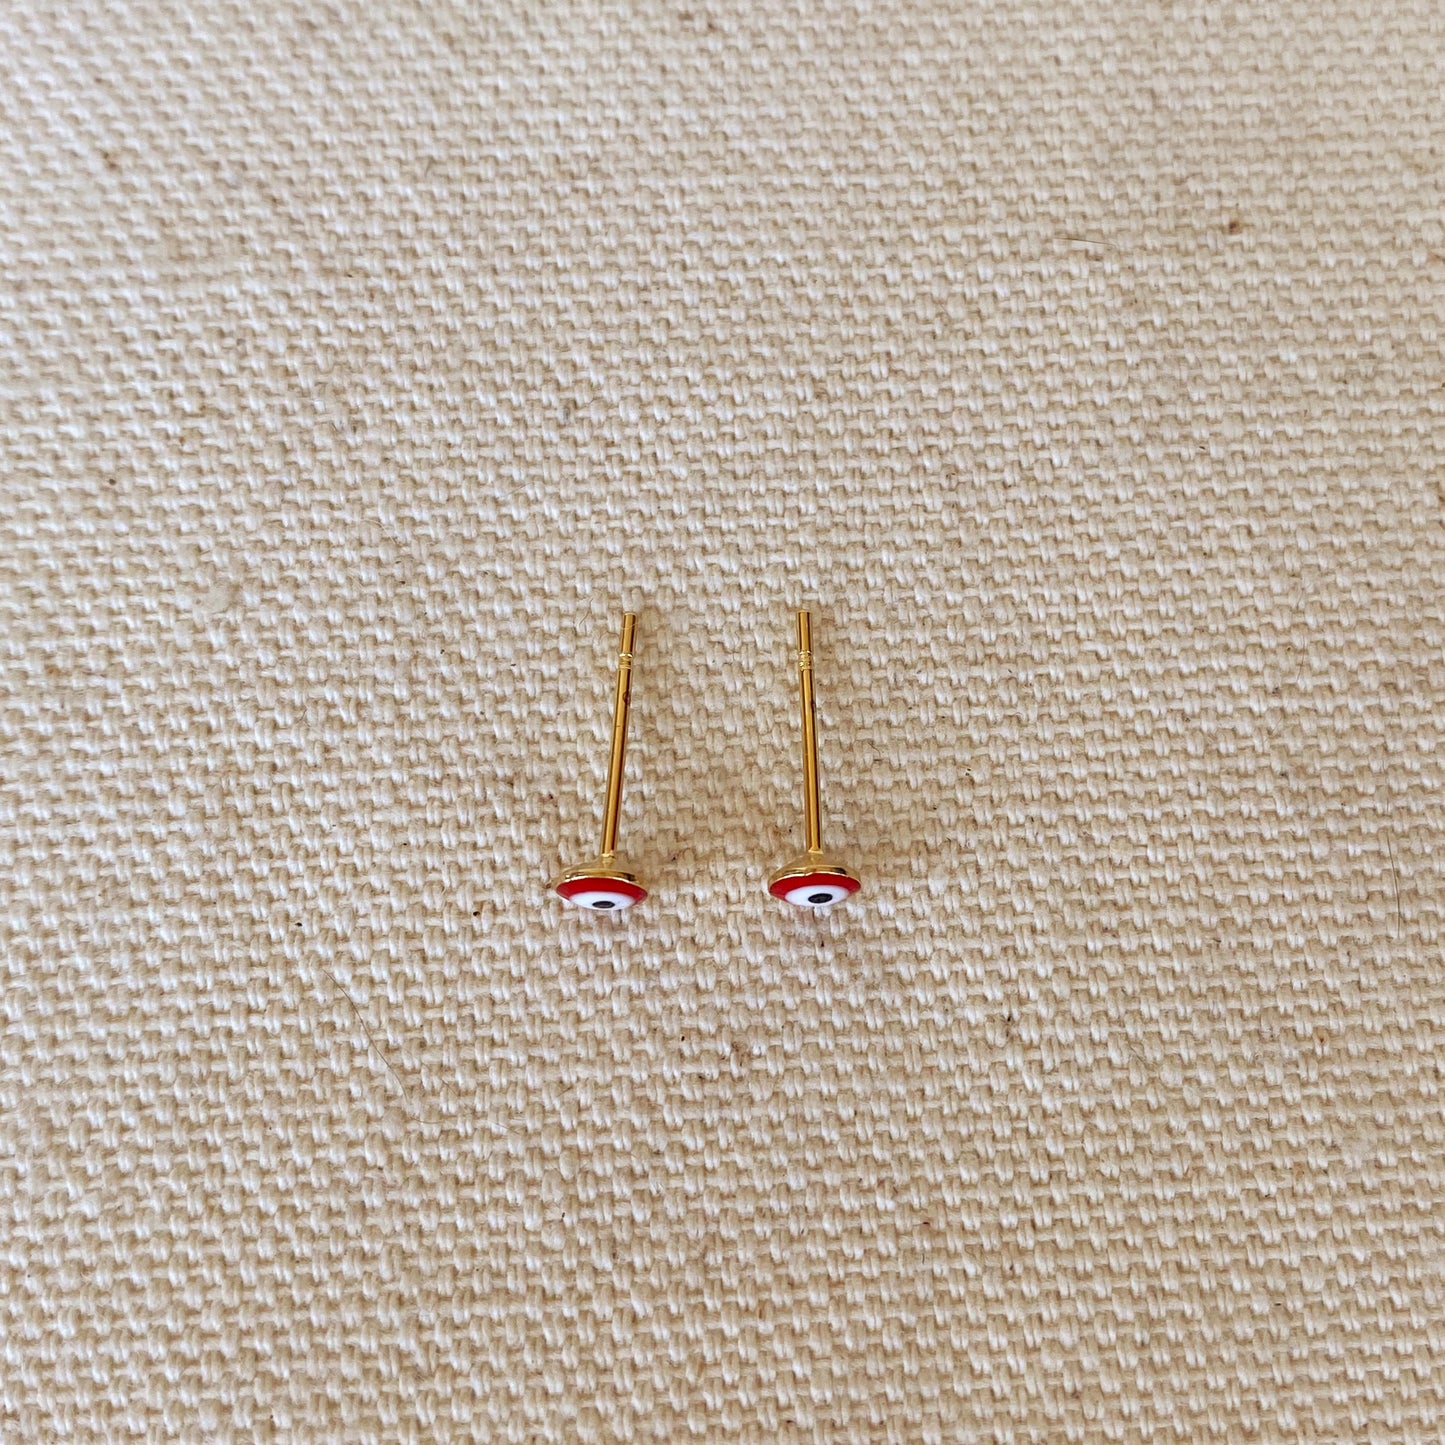 GoldFi 18k Gold Filled Tiny Red Evil Eye Stud Earrings